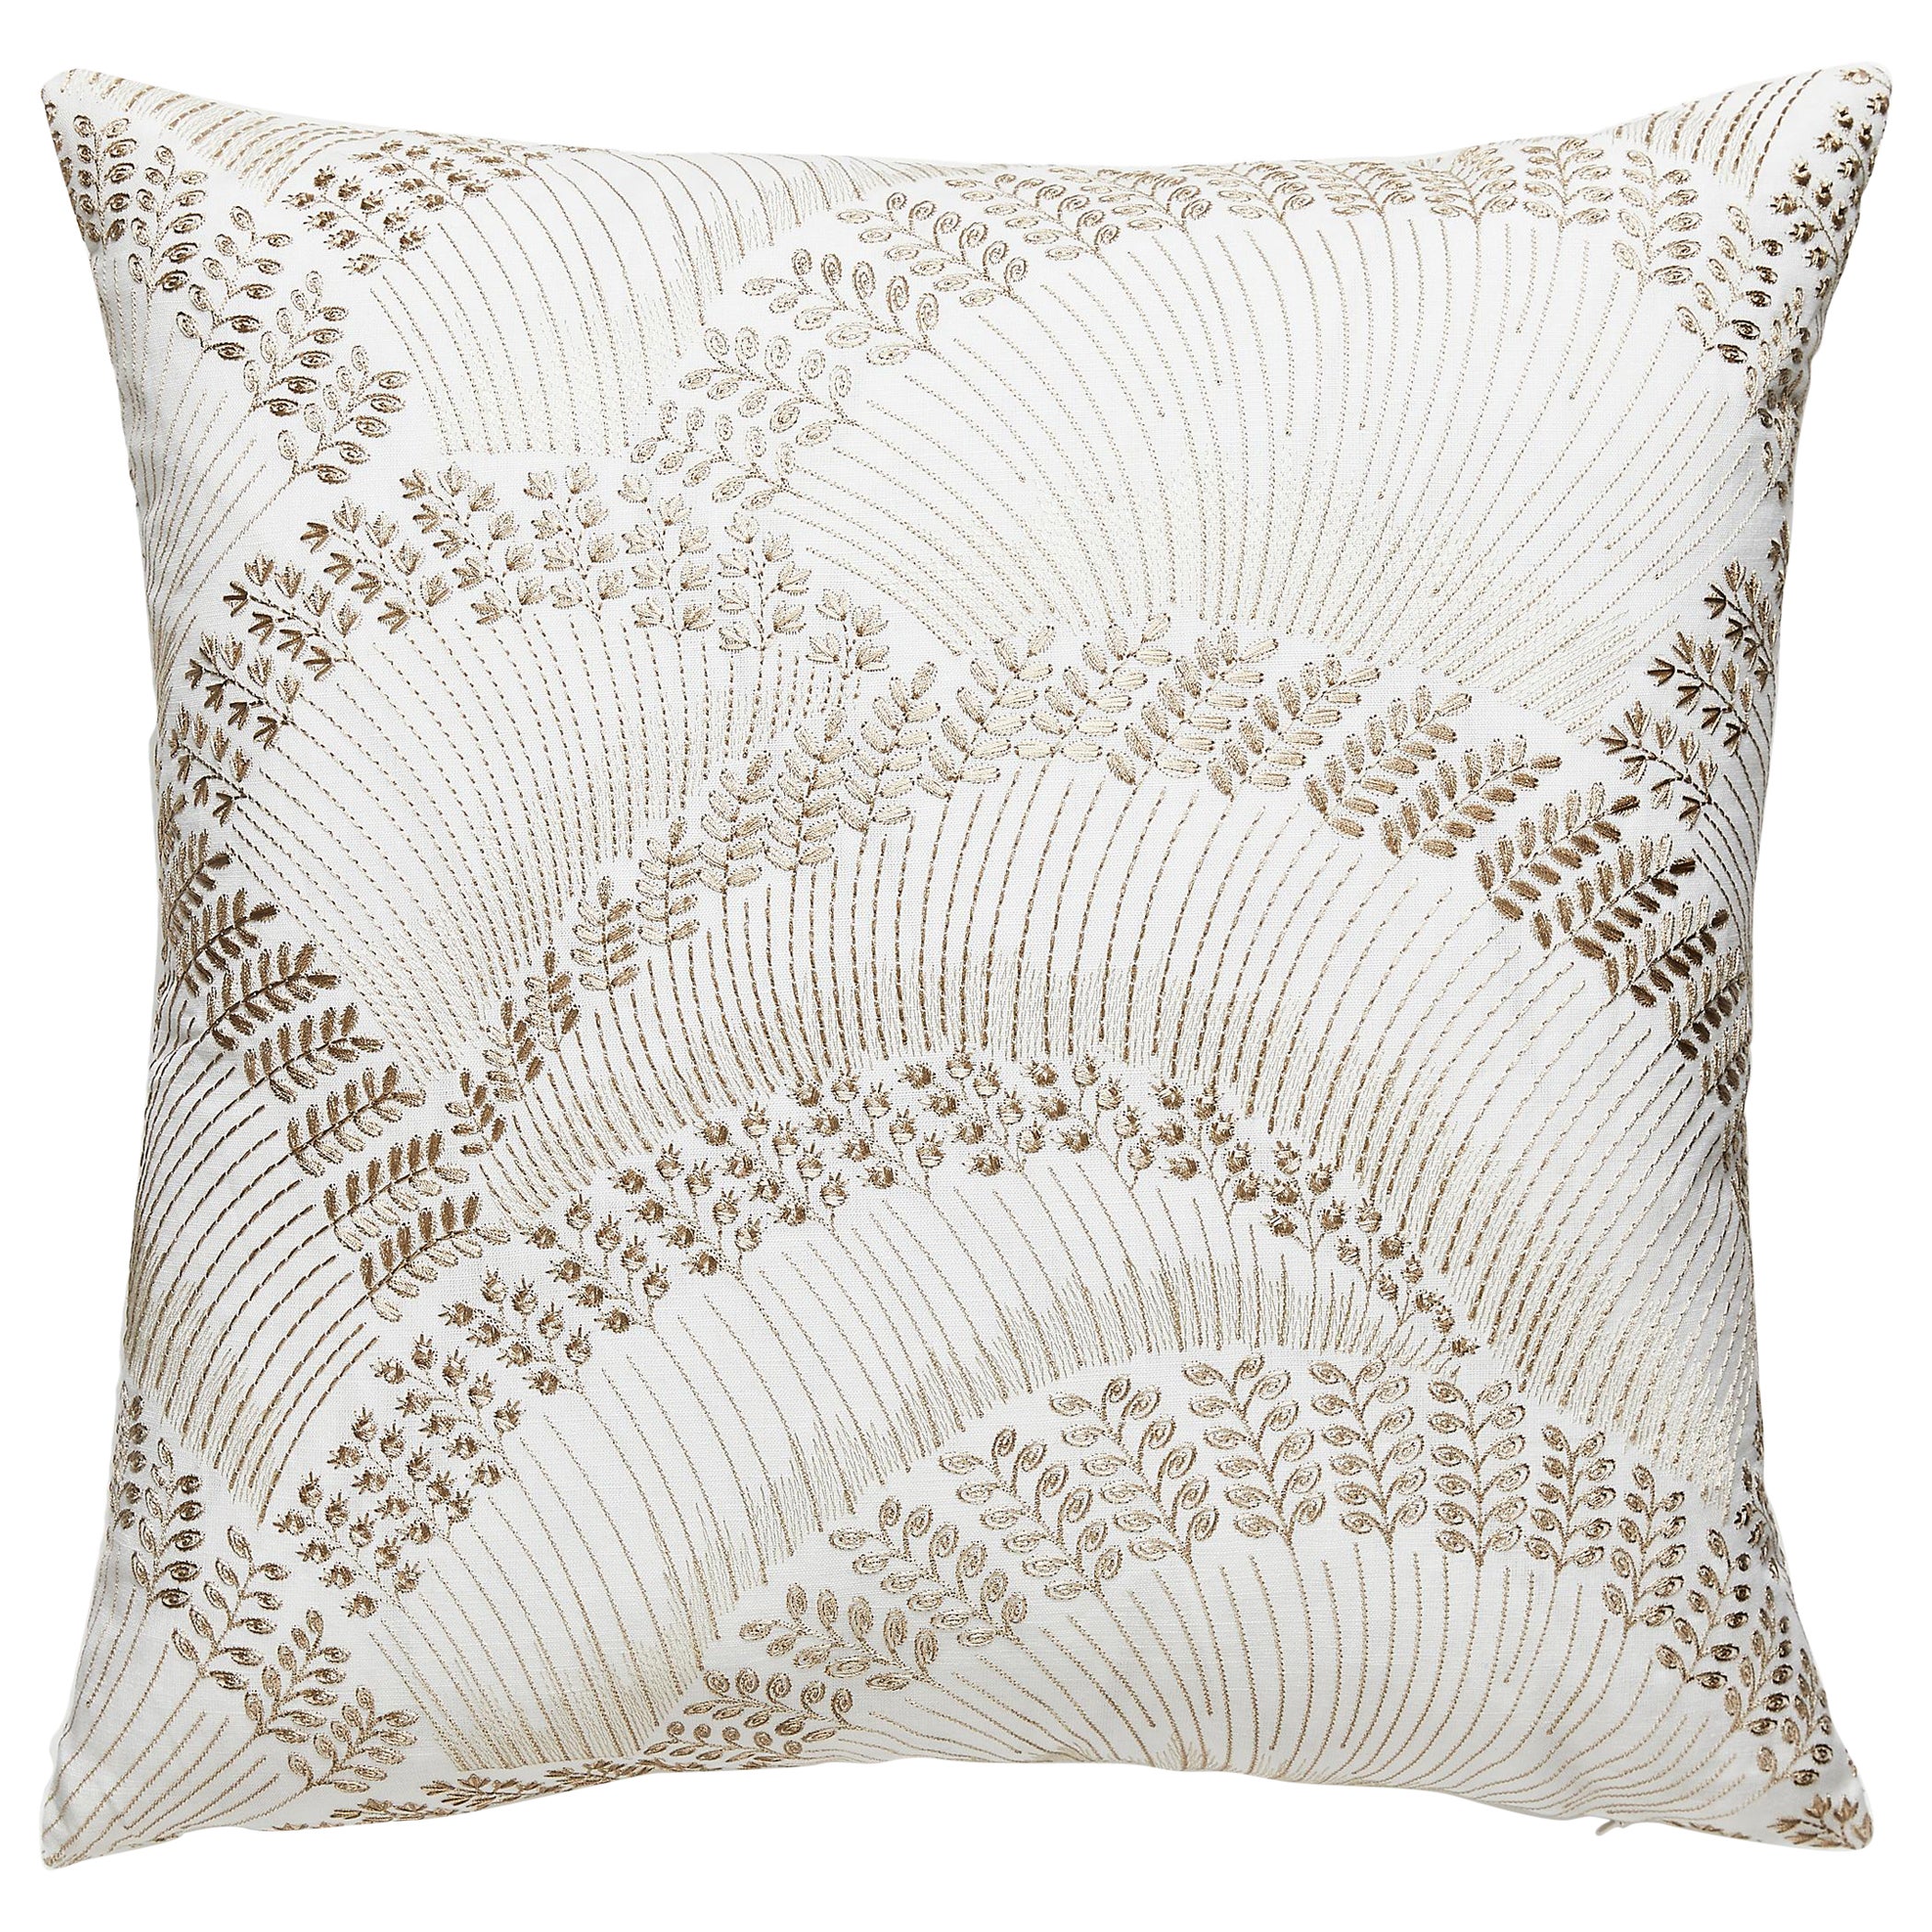 Lovegrass Embroidery Pillow